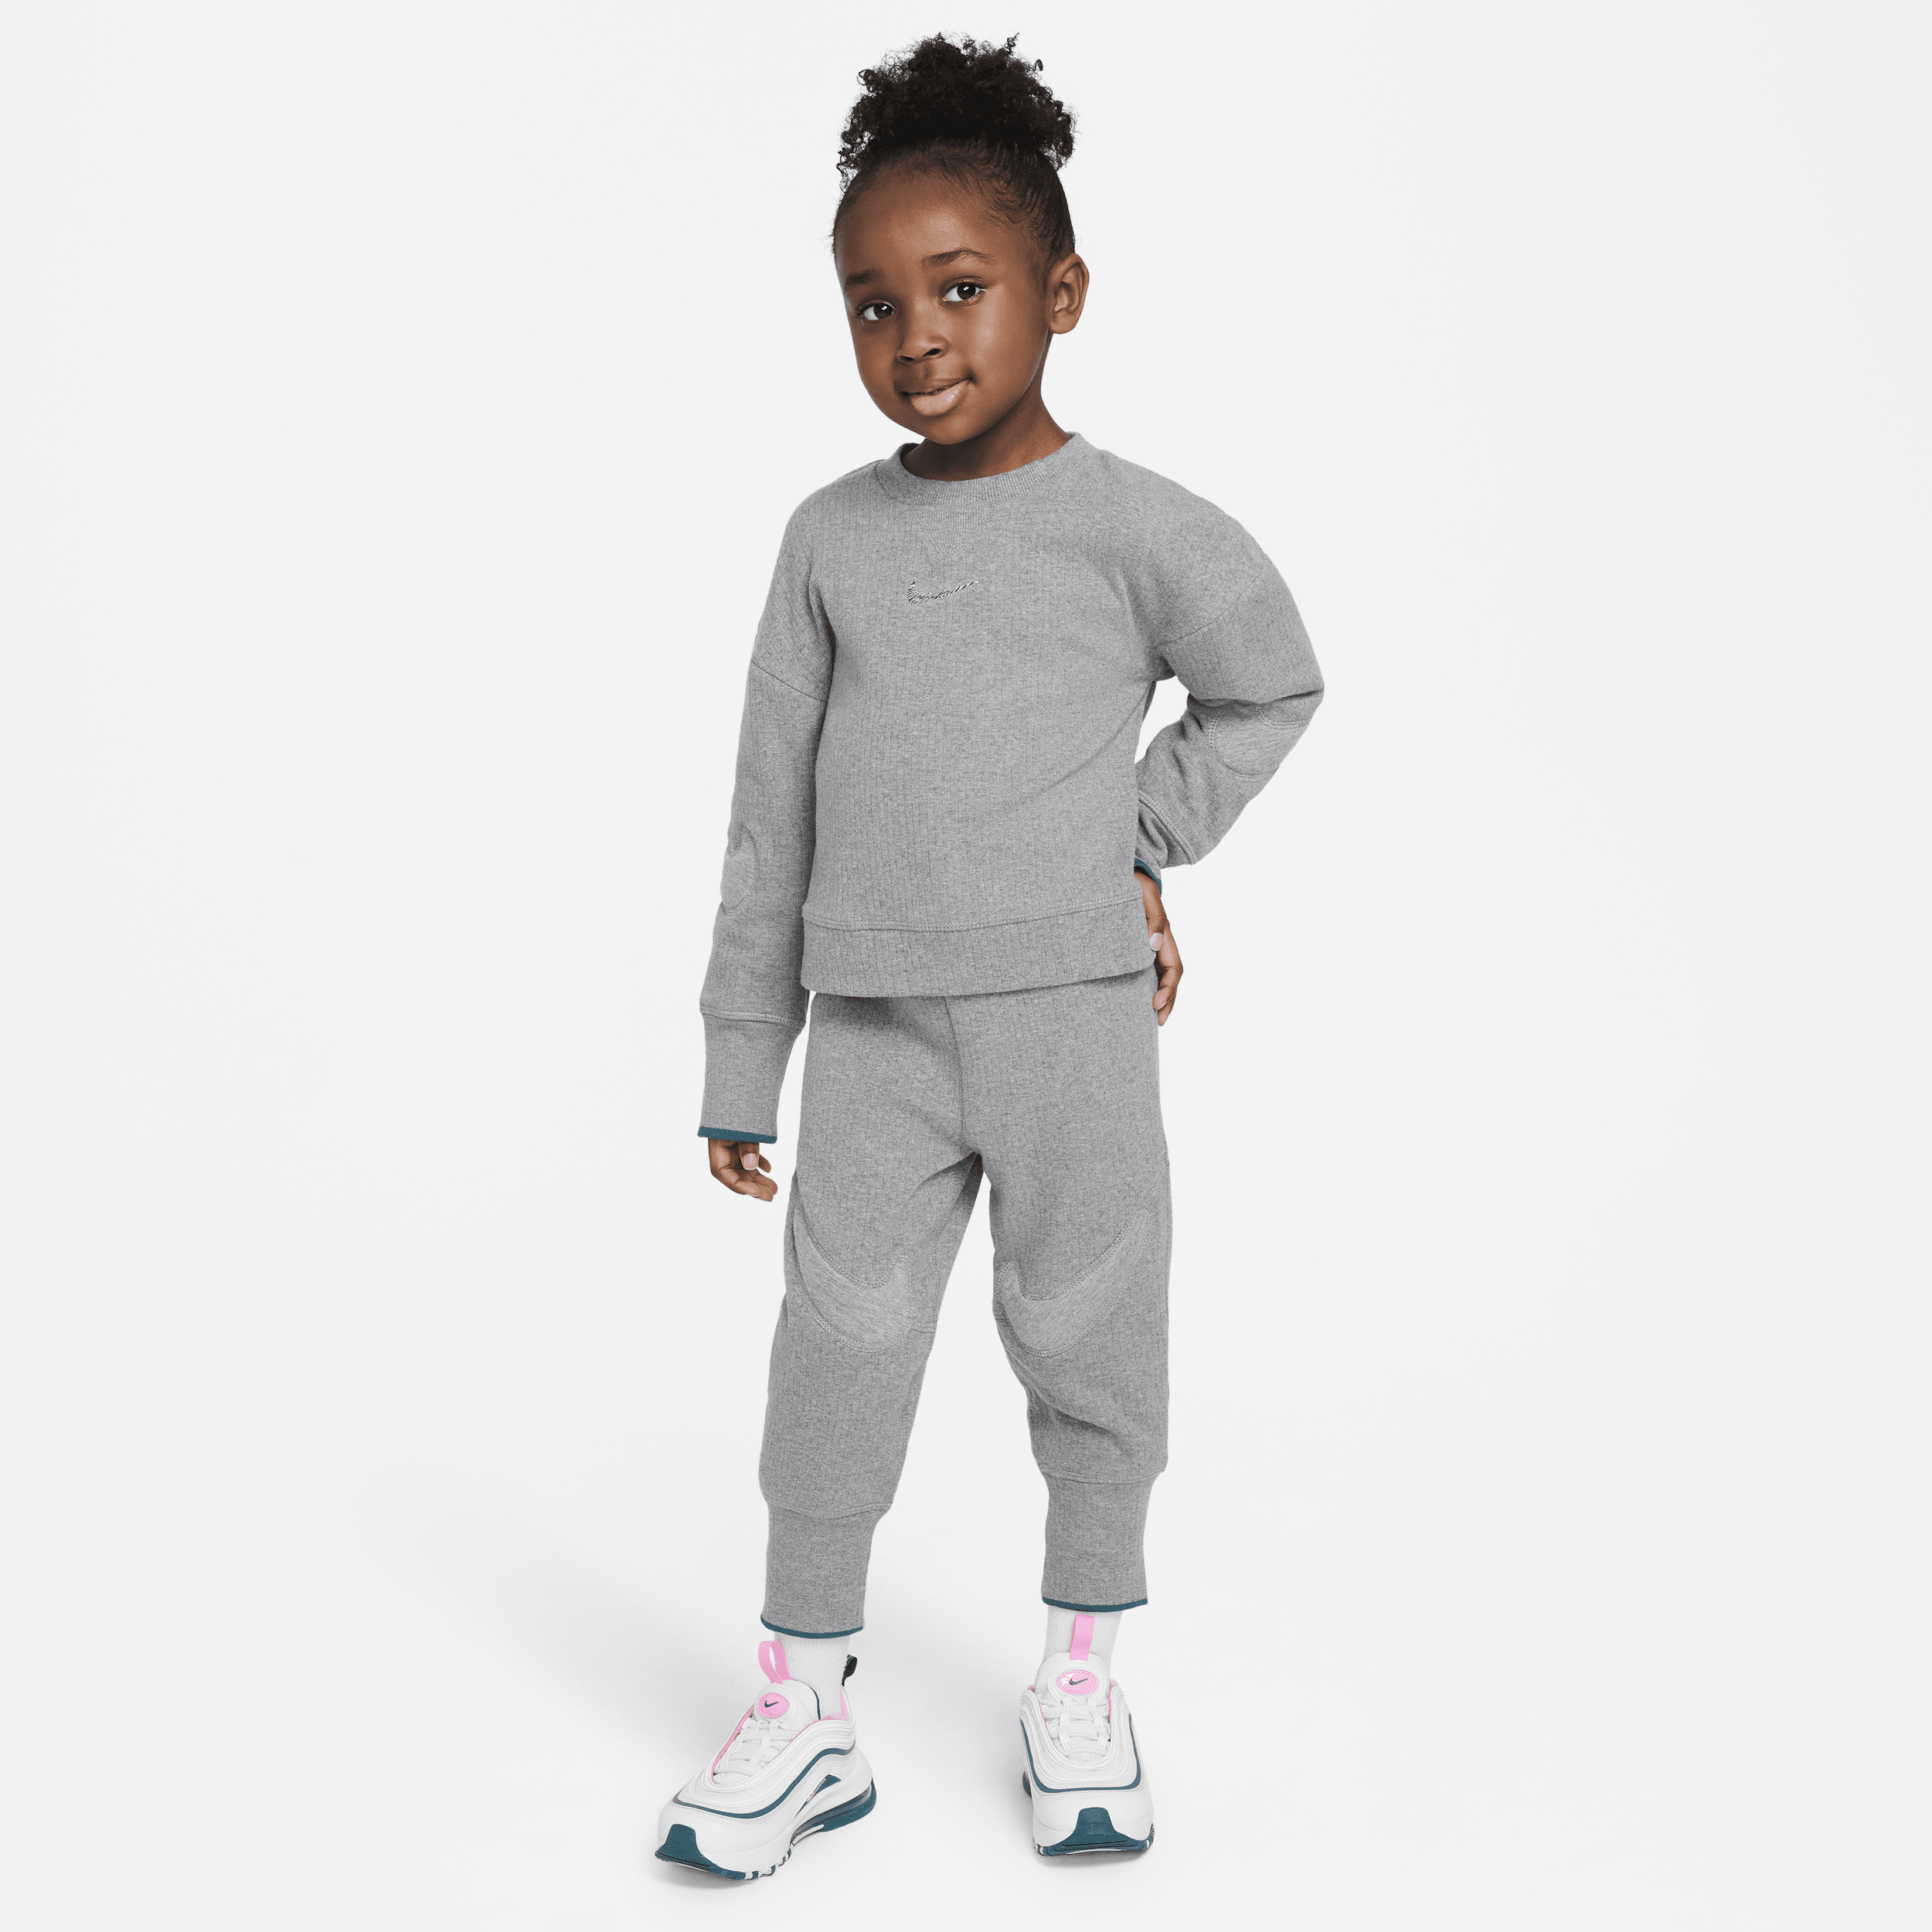 Nike Babies' Readyset Toddler 2-piece Set In Grey